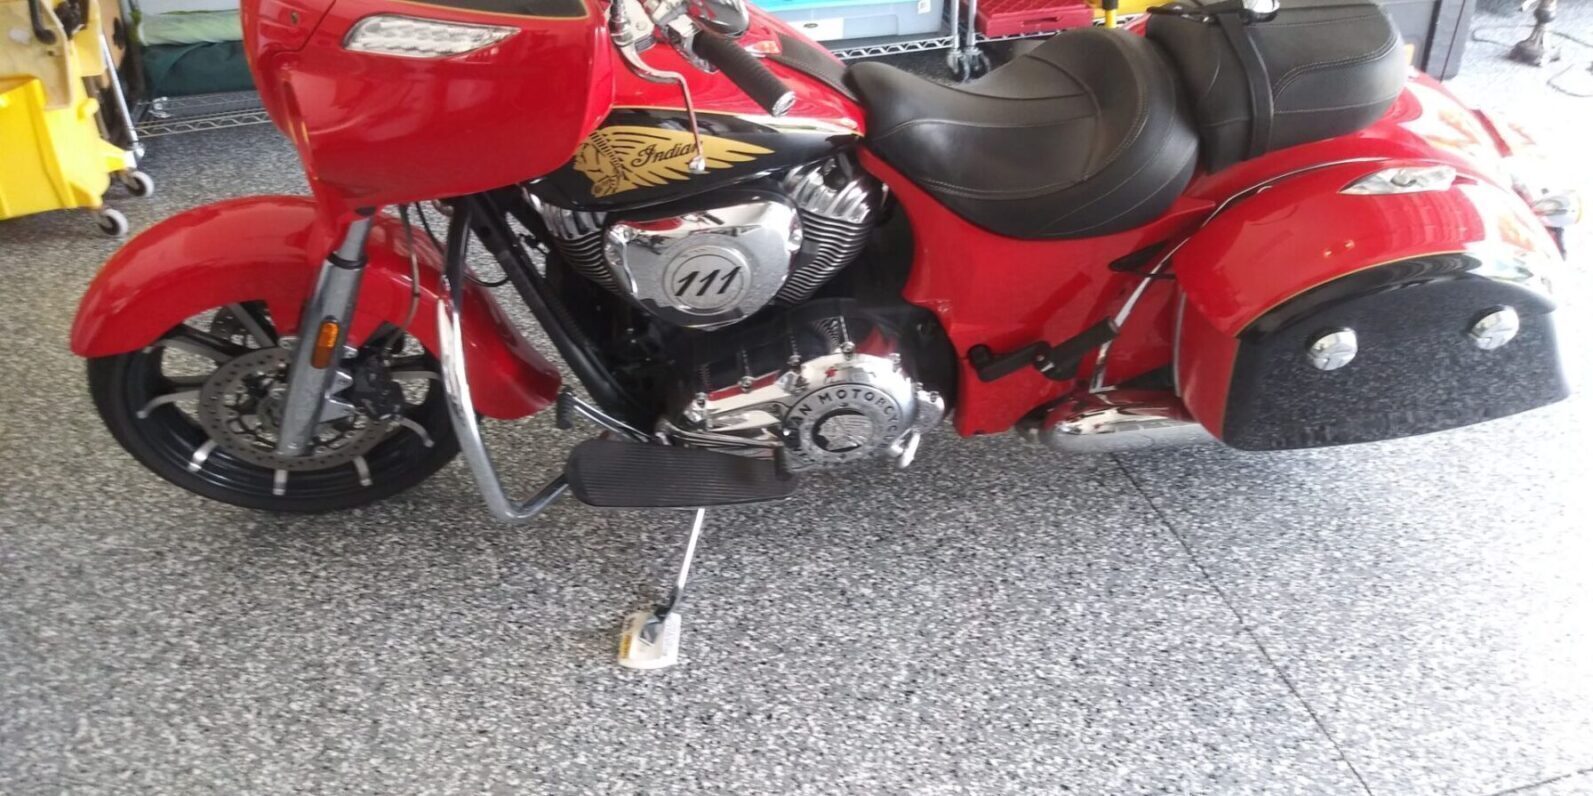 Epoxy Garage floor with motorcycle on it